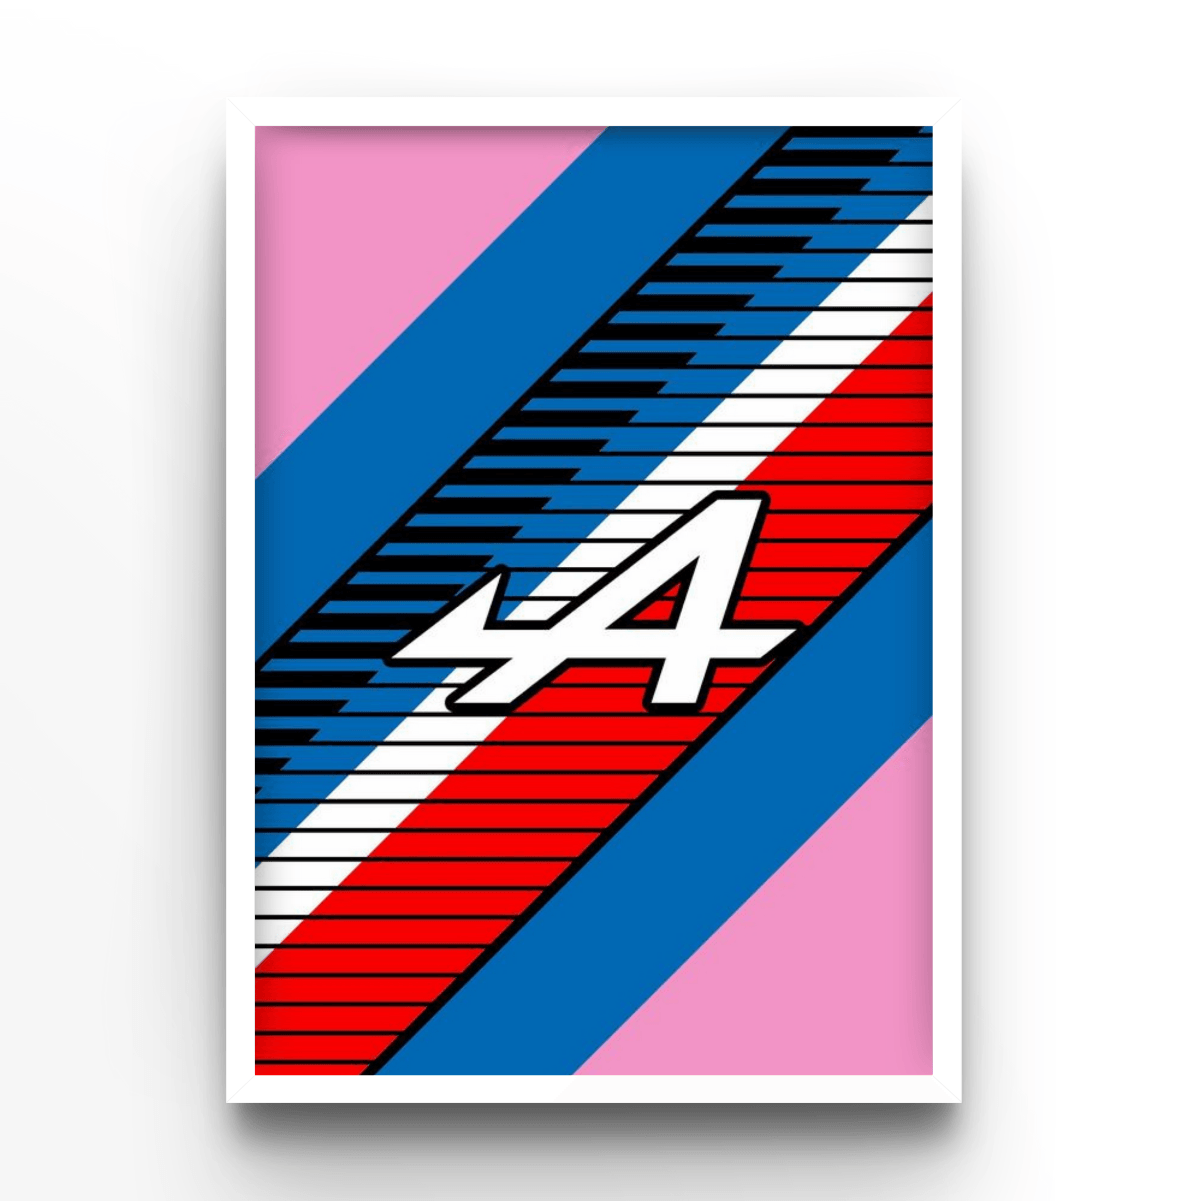 Alpine - A4, A3, A2 Posters Base - Poster Print Shop / Art Prints / PostersBase